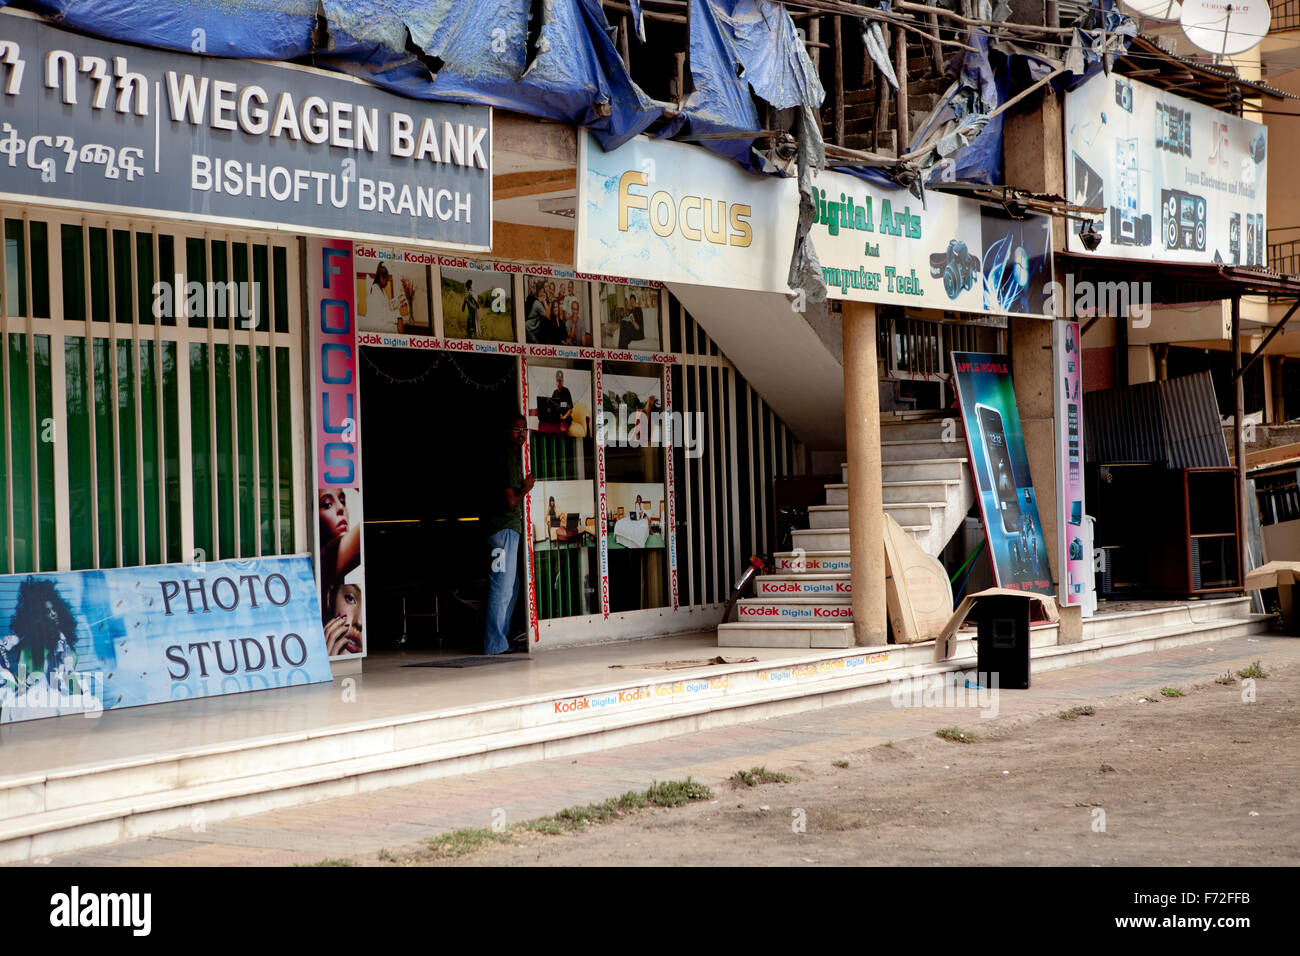 Wegagen Bank, Fotostudio Focus, Bishofu, Debre Zeyit, Addis Abeba, Äthiopien, Horn von Afrika, Ostafrika, Afrika Stockfoto